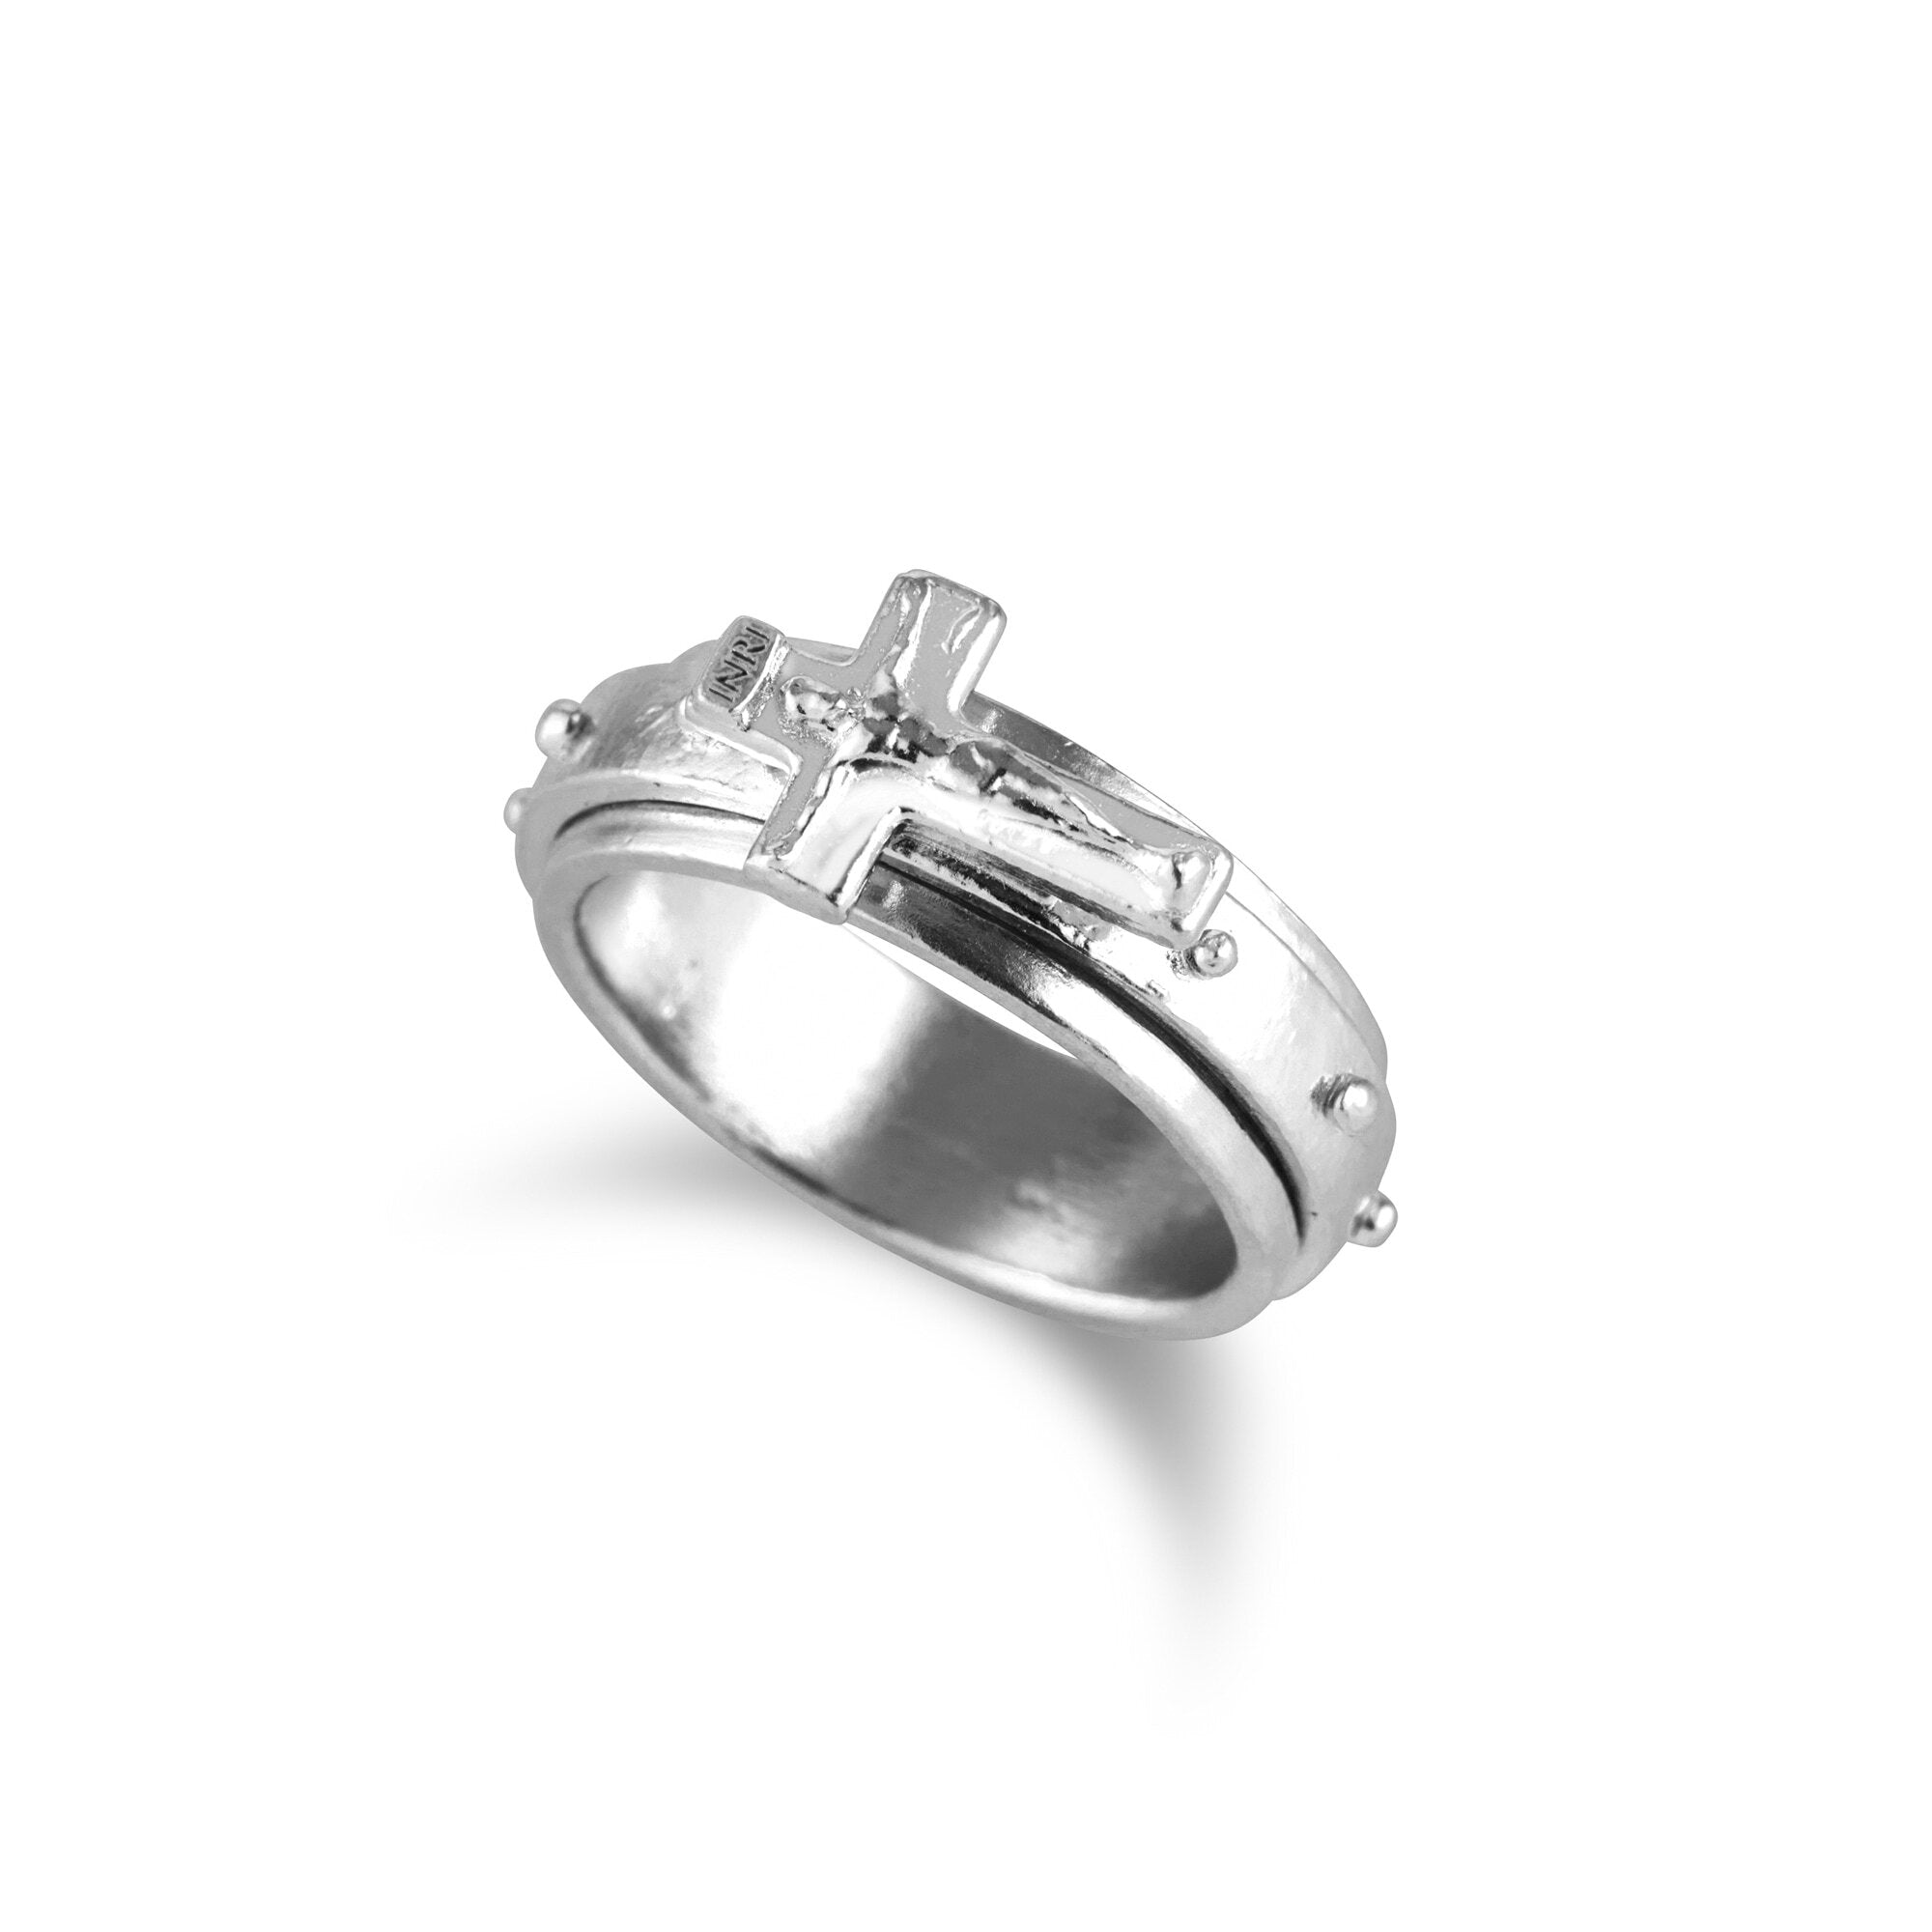 Humilis sterling silver rosary ring